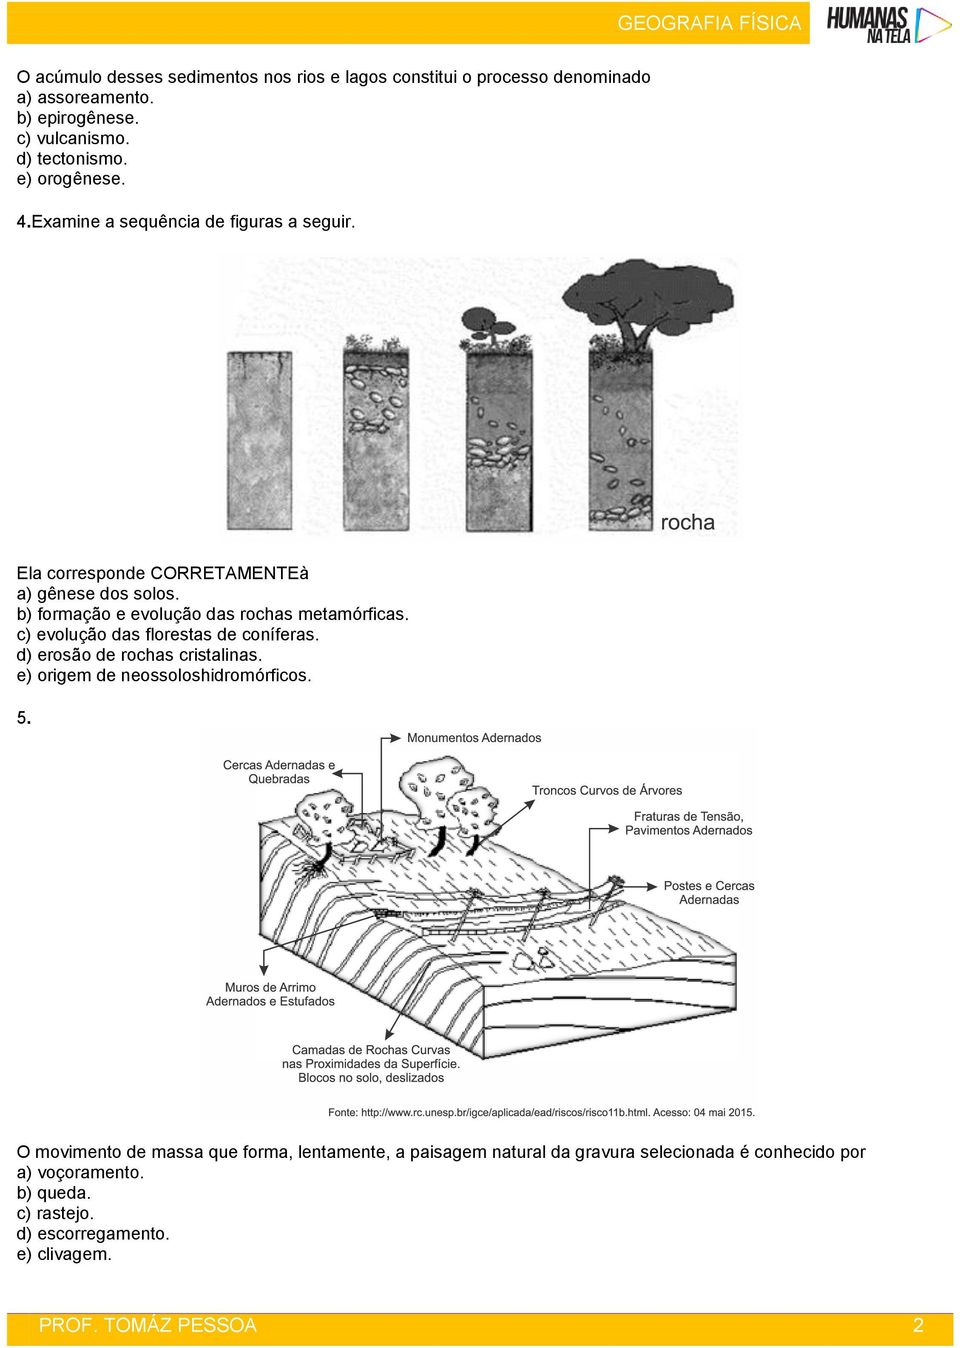 b) formação e evolução das rochas metamórficas. c) evolução das florestas de coníferas. d) erosão de rochas cristalinas.